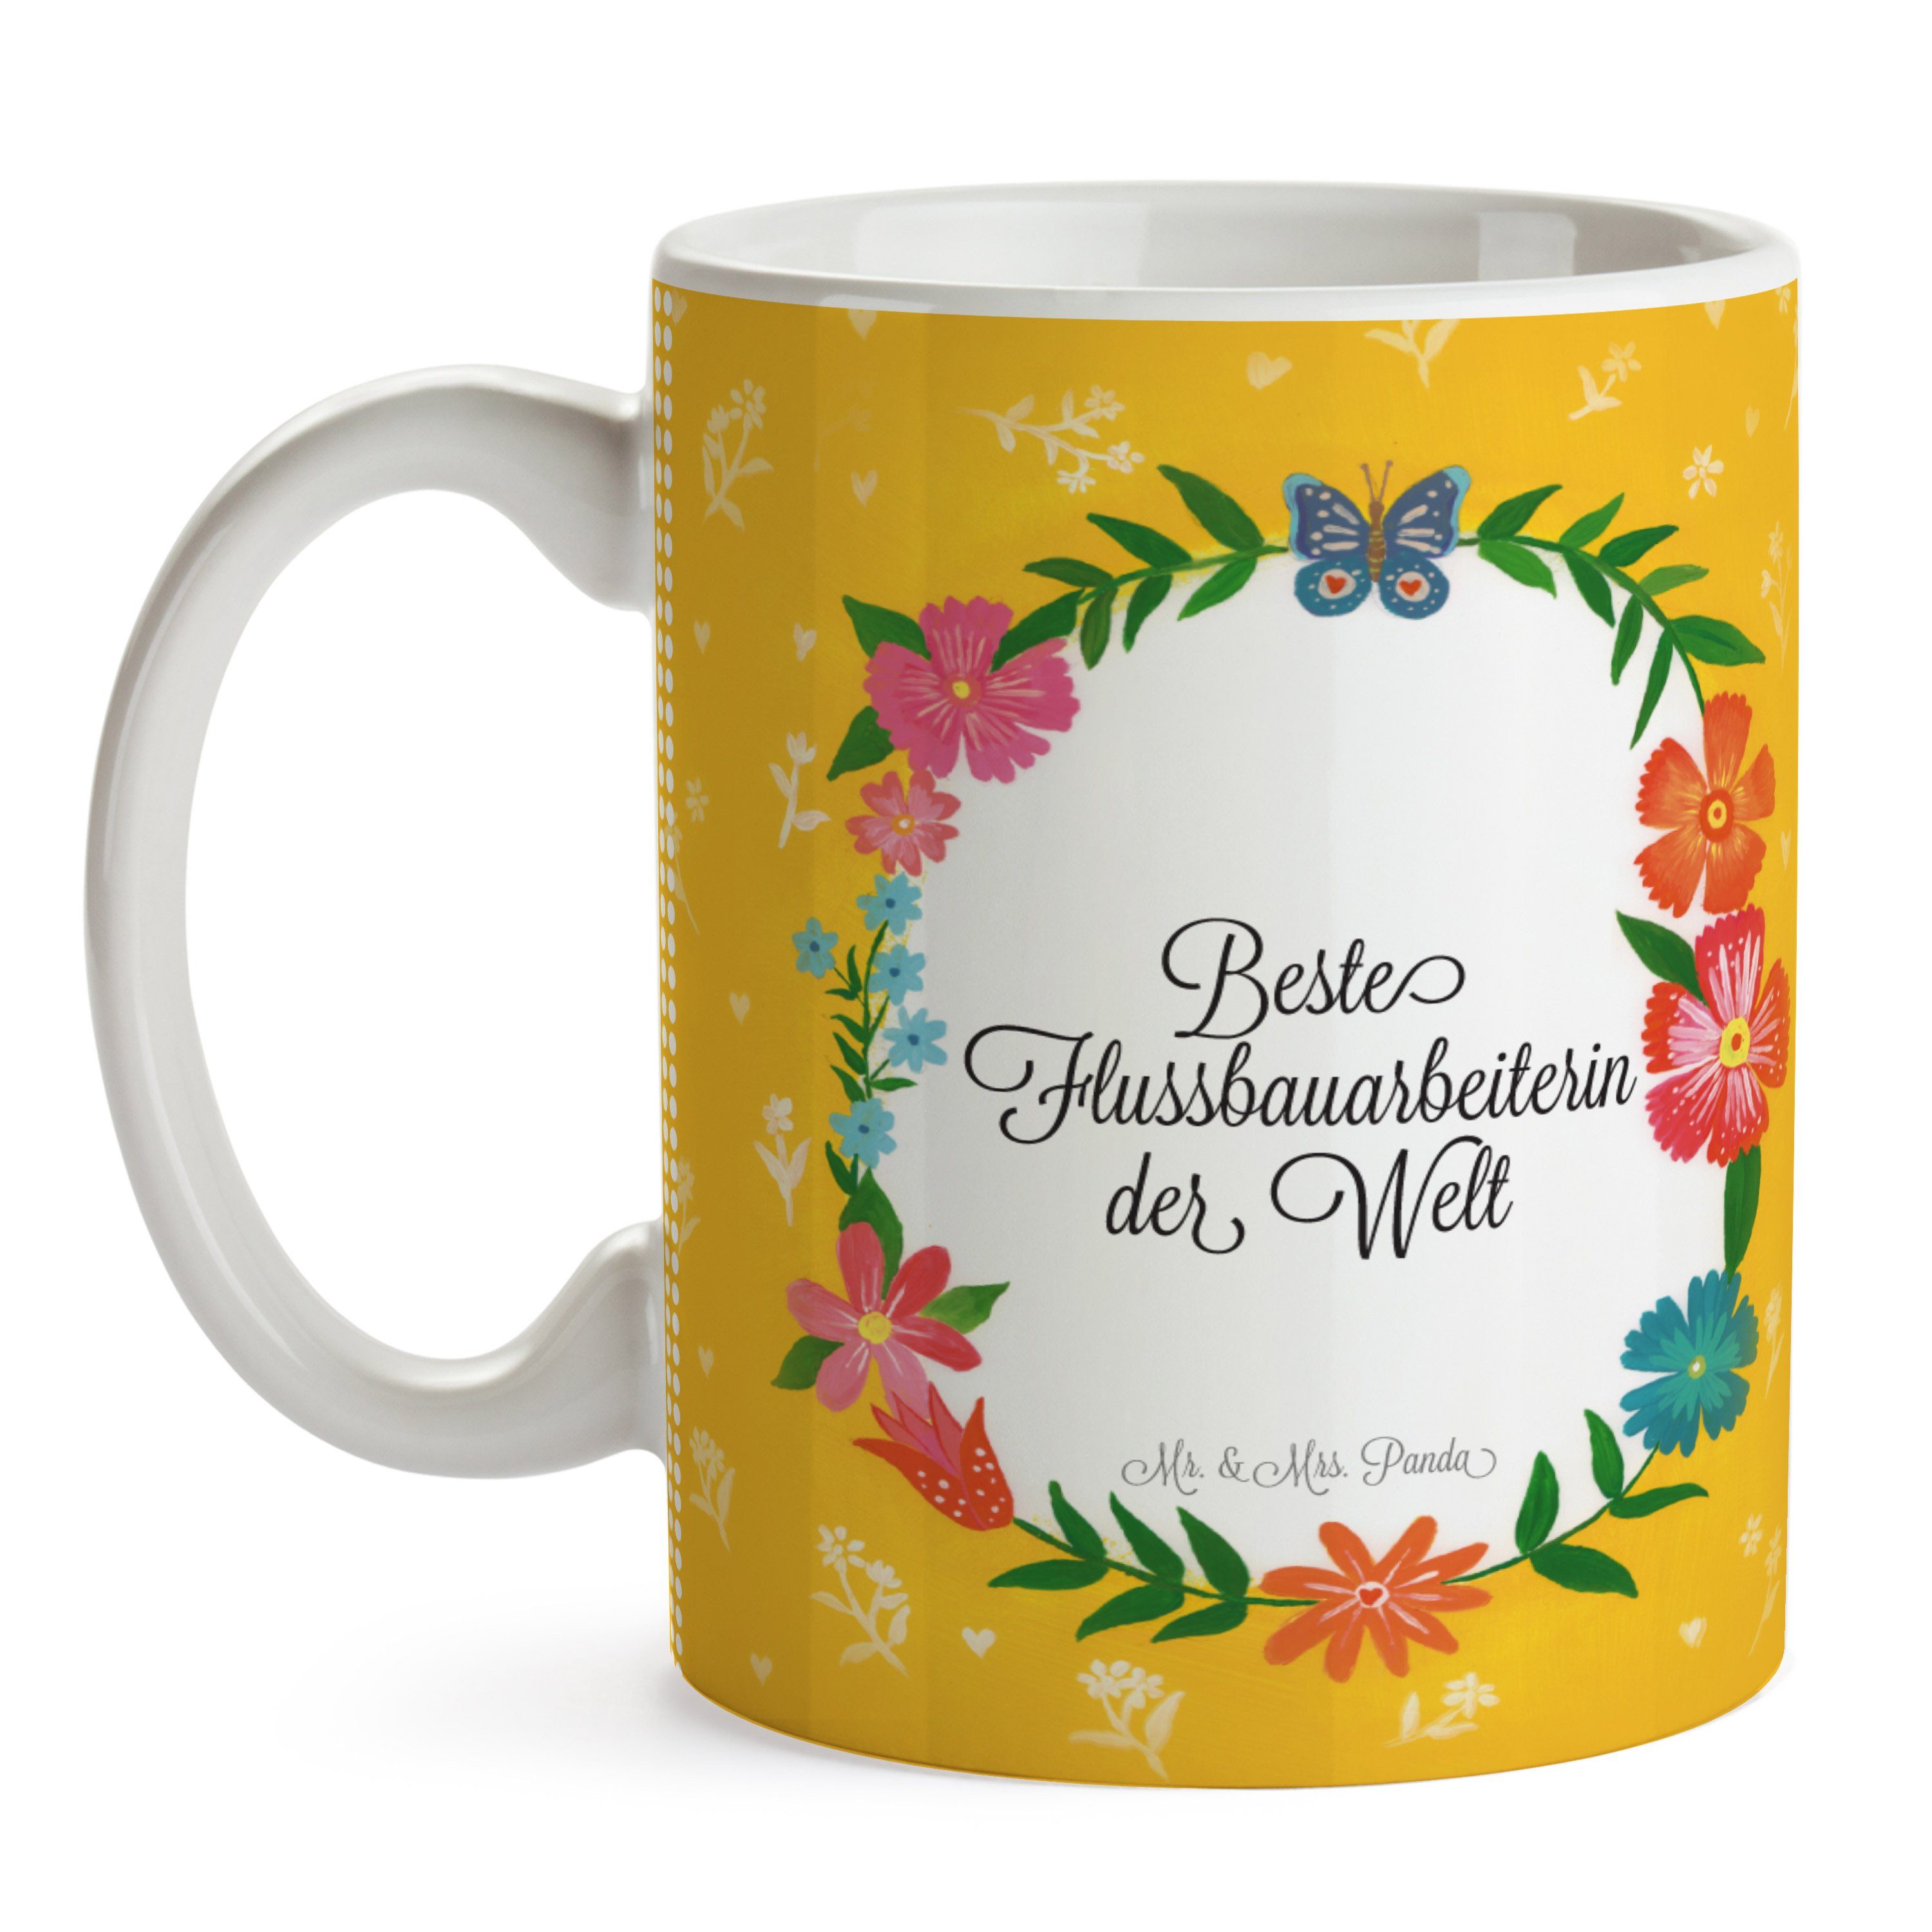 Mr. & Mrs. Panda Tasse Keramik Kaffeetasse, Ausbildung, Geschenk, Motive, - Flussbauarbeiterin Tasse